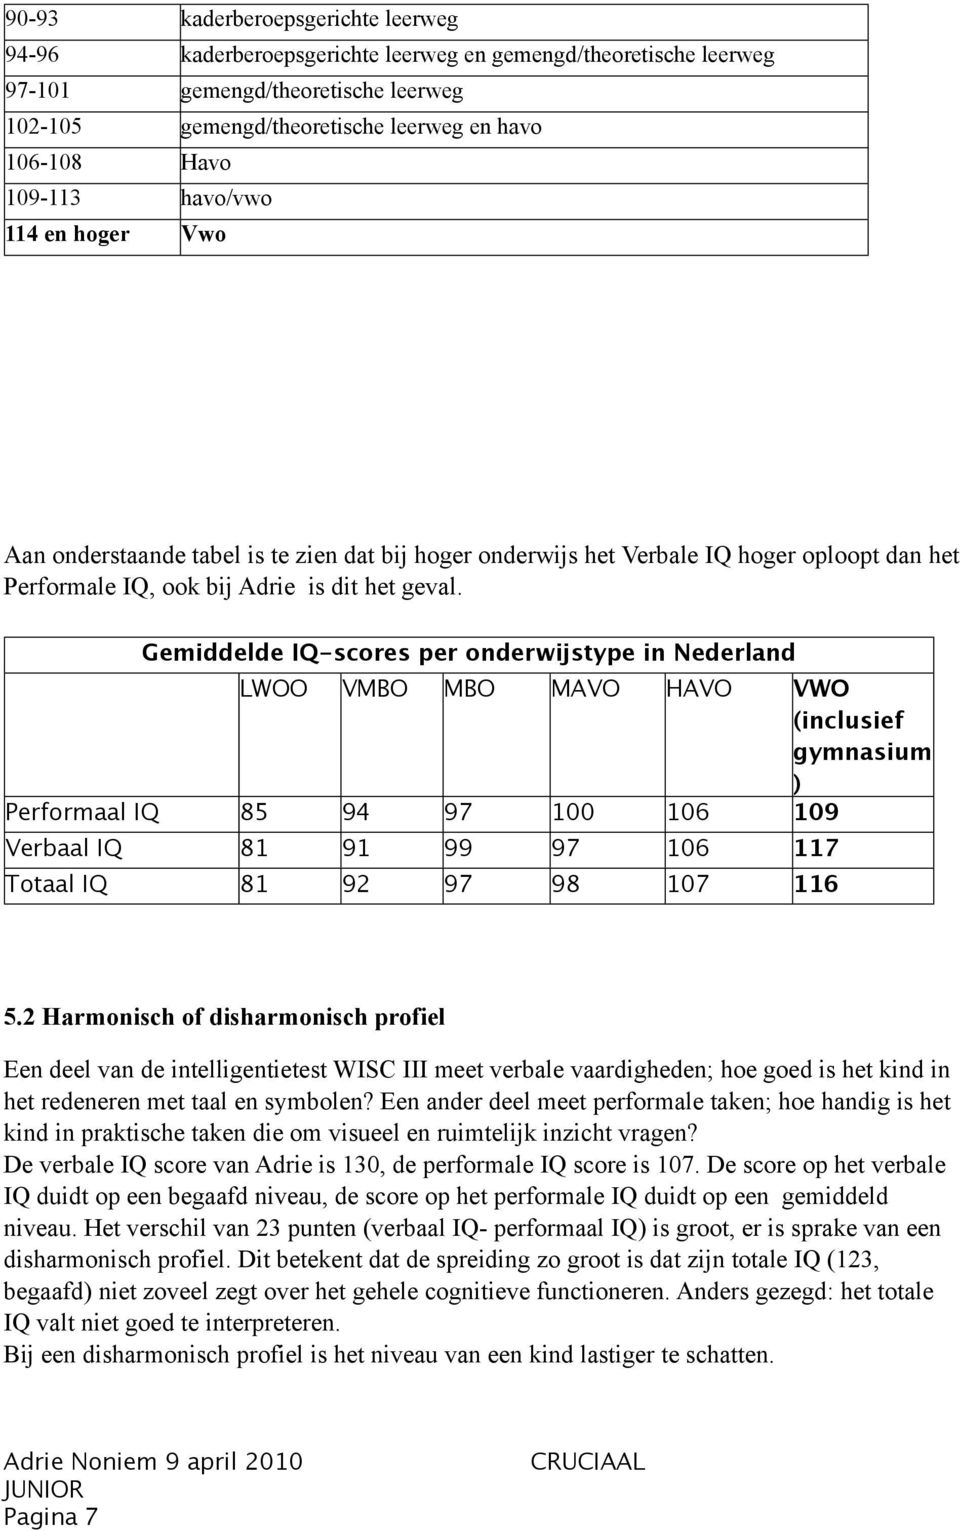 Gemiddelde IQ-scores per onderwijstype in Nederland LWOO VMBO MBO MAVO HAVO VWO (inclusief gymnasium ) Performaal IQ 85 94 97 100 106 109 Verbaal IQ 81 91 99 97 106 117 Totaal IQ 81 92 97 98 107 116